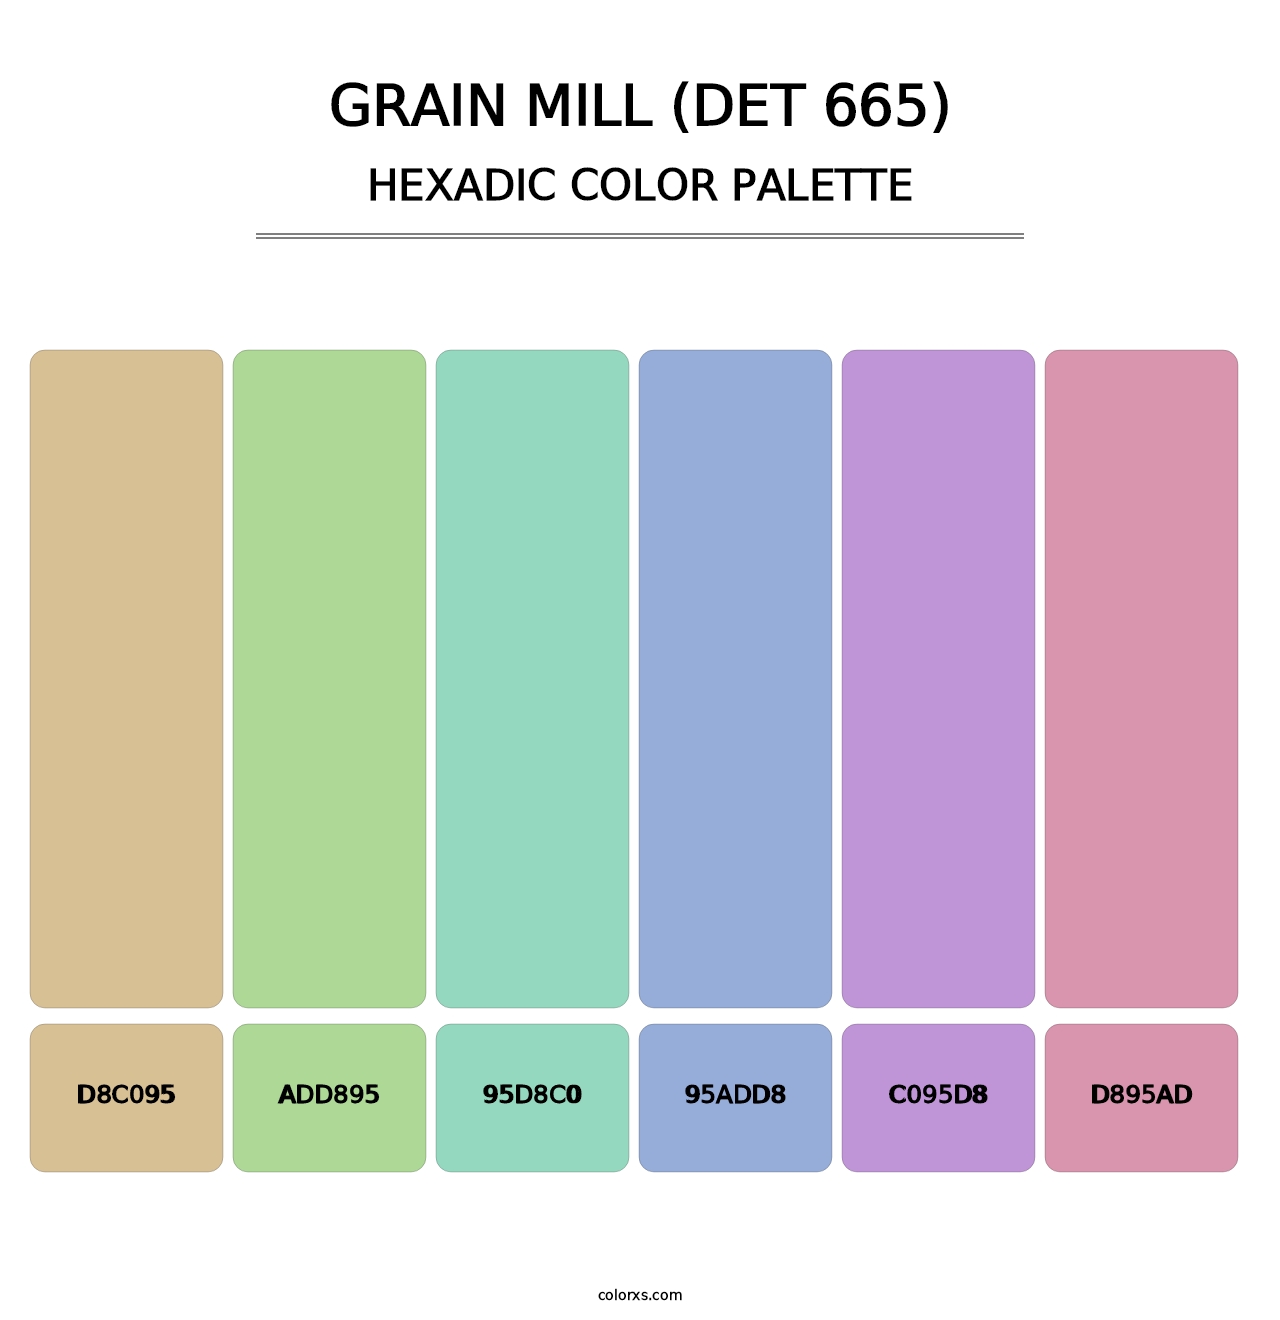 Grain Mill (DET 665) - Hexadic Color Palette